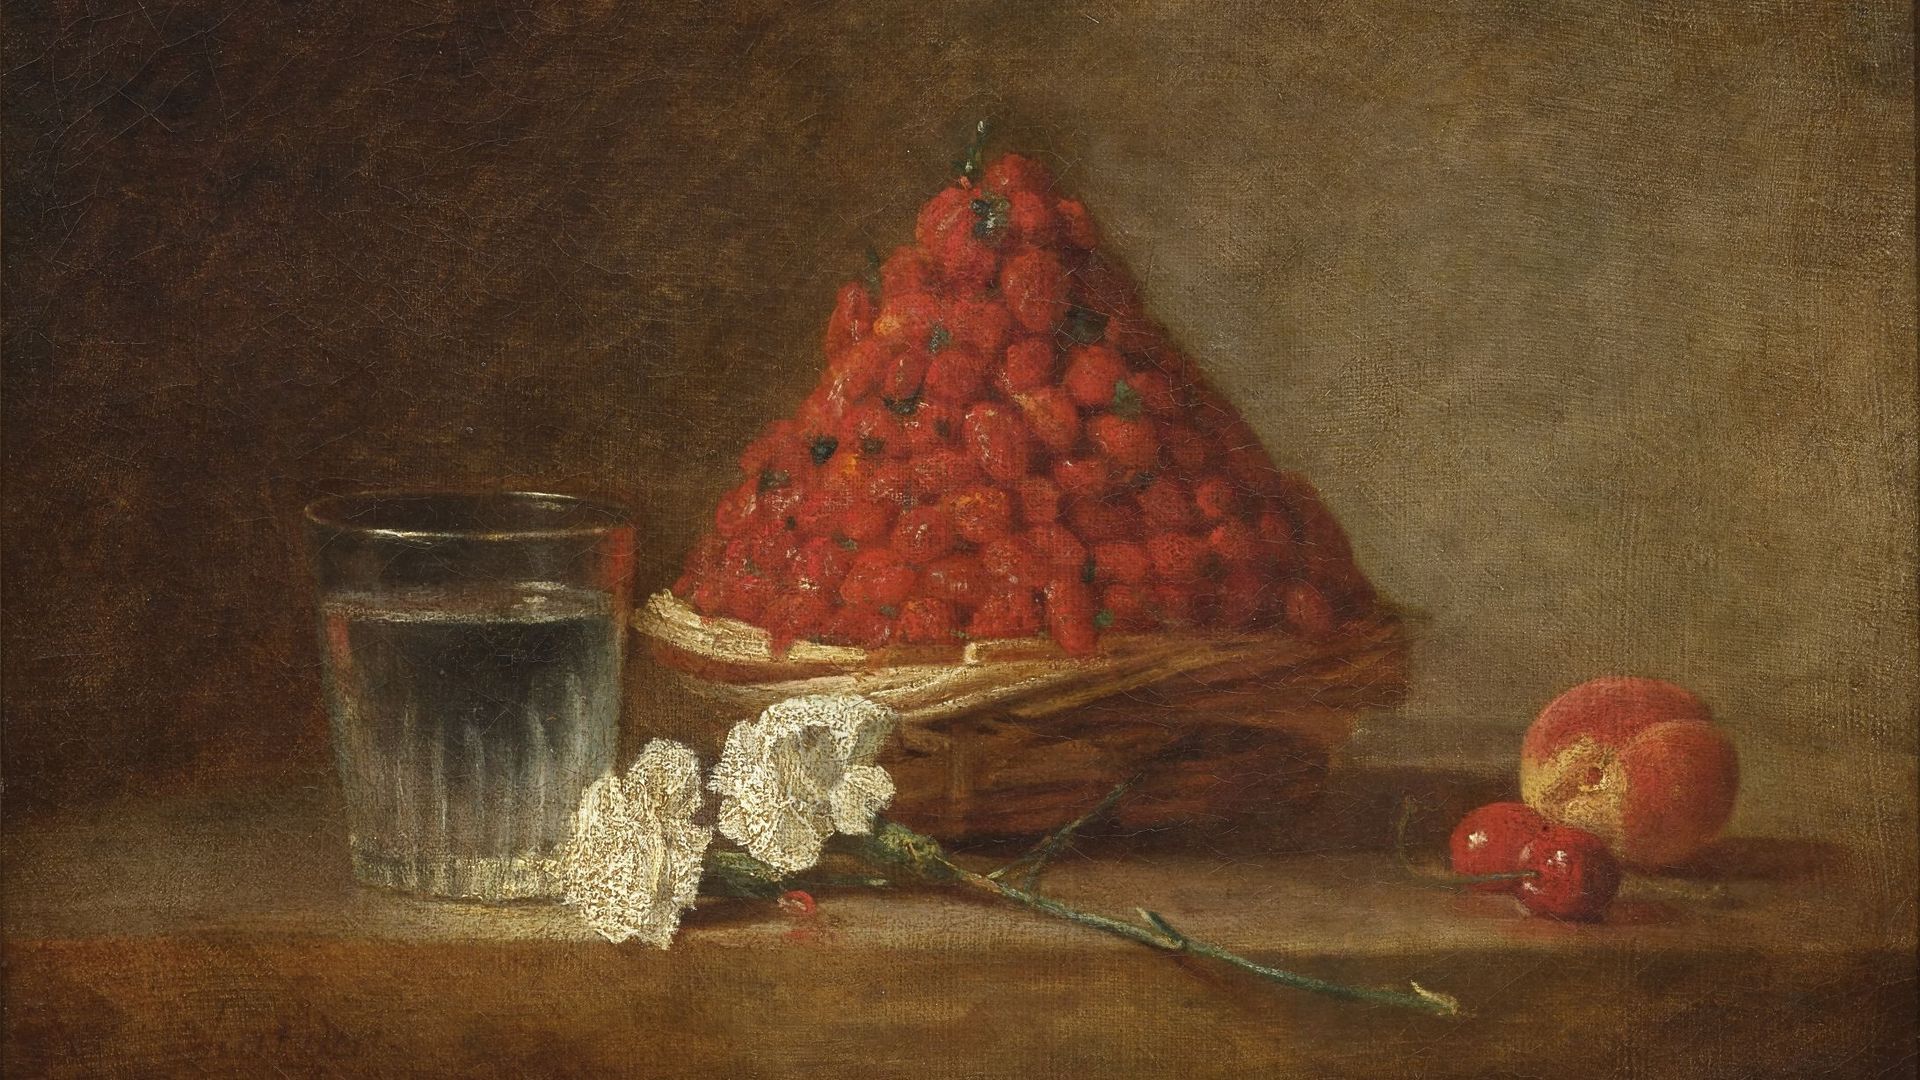 Ce mercredi 23 mars, Artcurial et le cabinet Turquin présentaient un chef-d’œuvre de la peinture occidentale, Le panier de fraises des bois de Jean-Siméon Chardin, provenant de la collection Eudoxe Marcille.